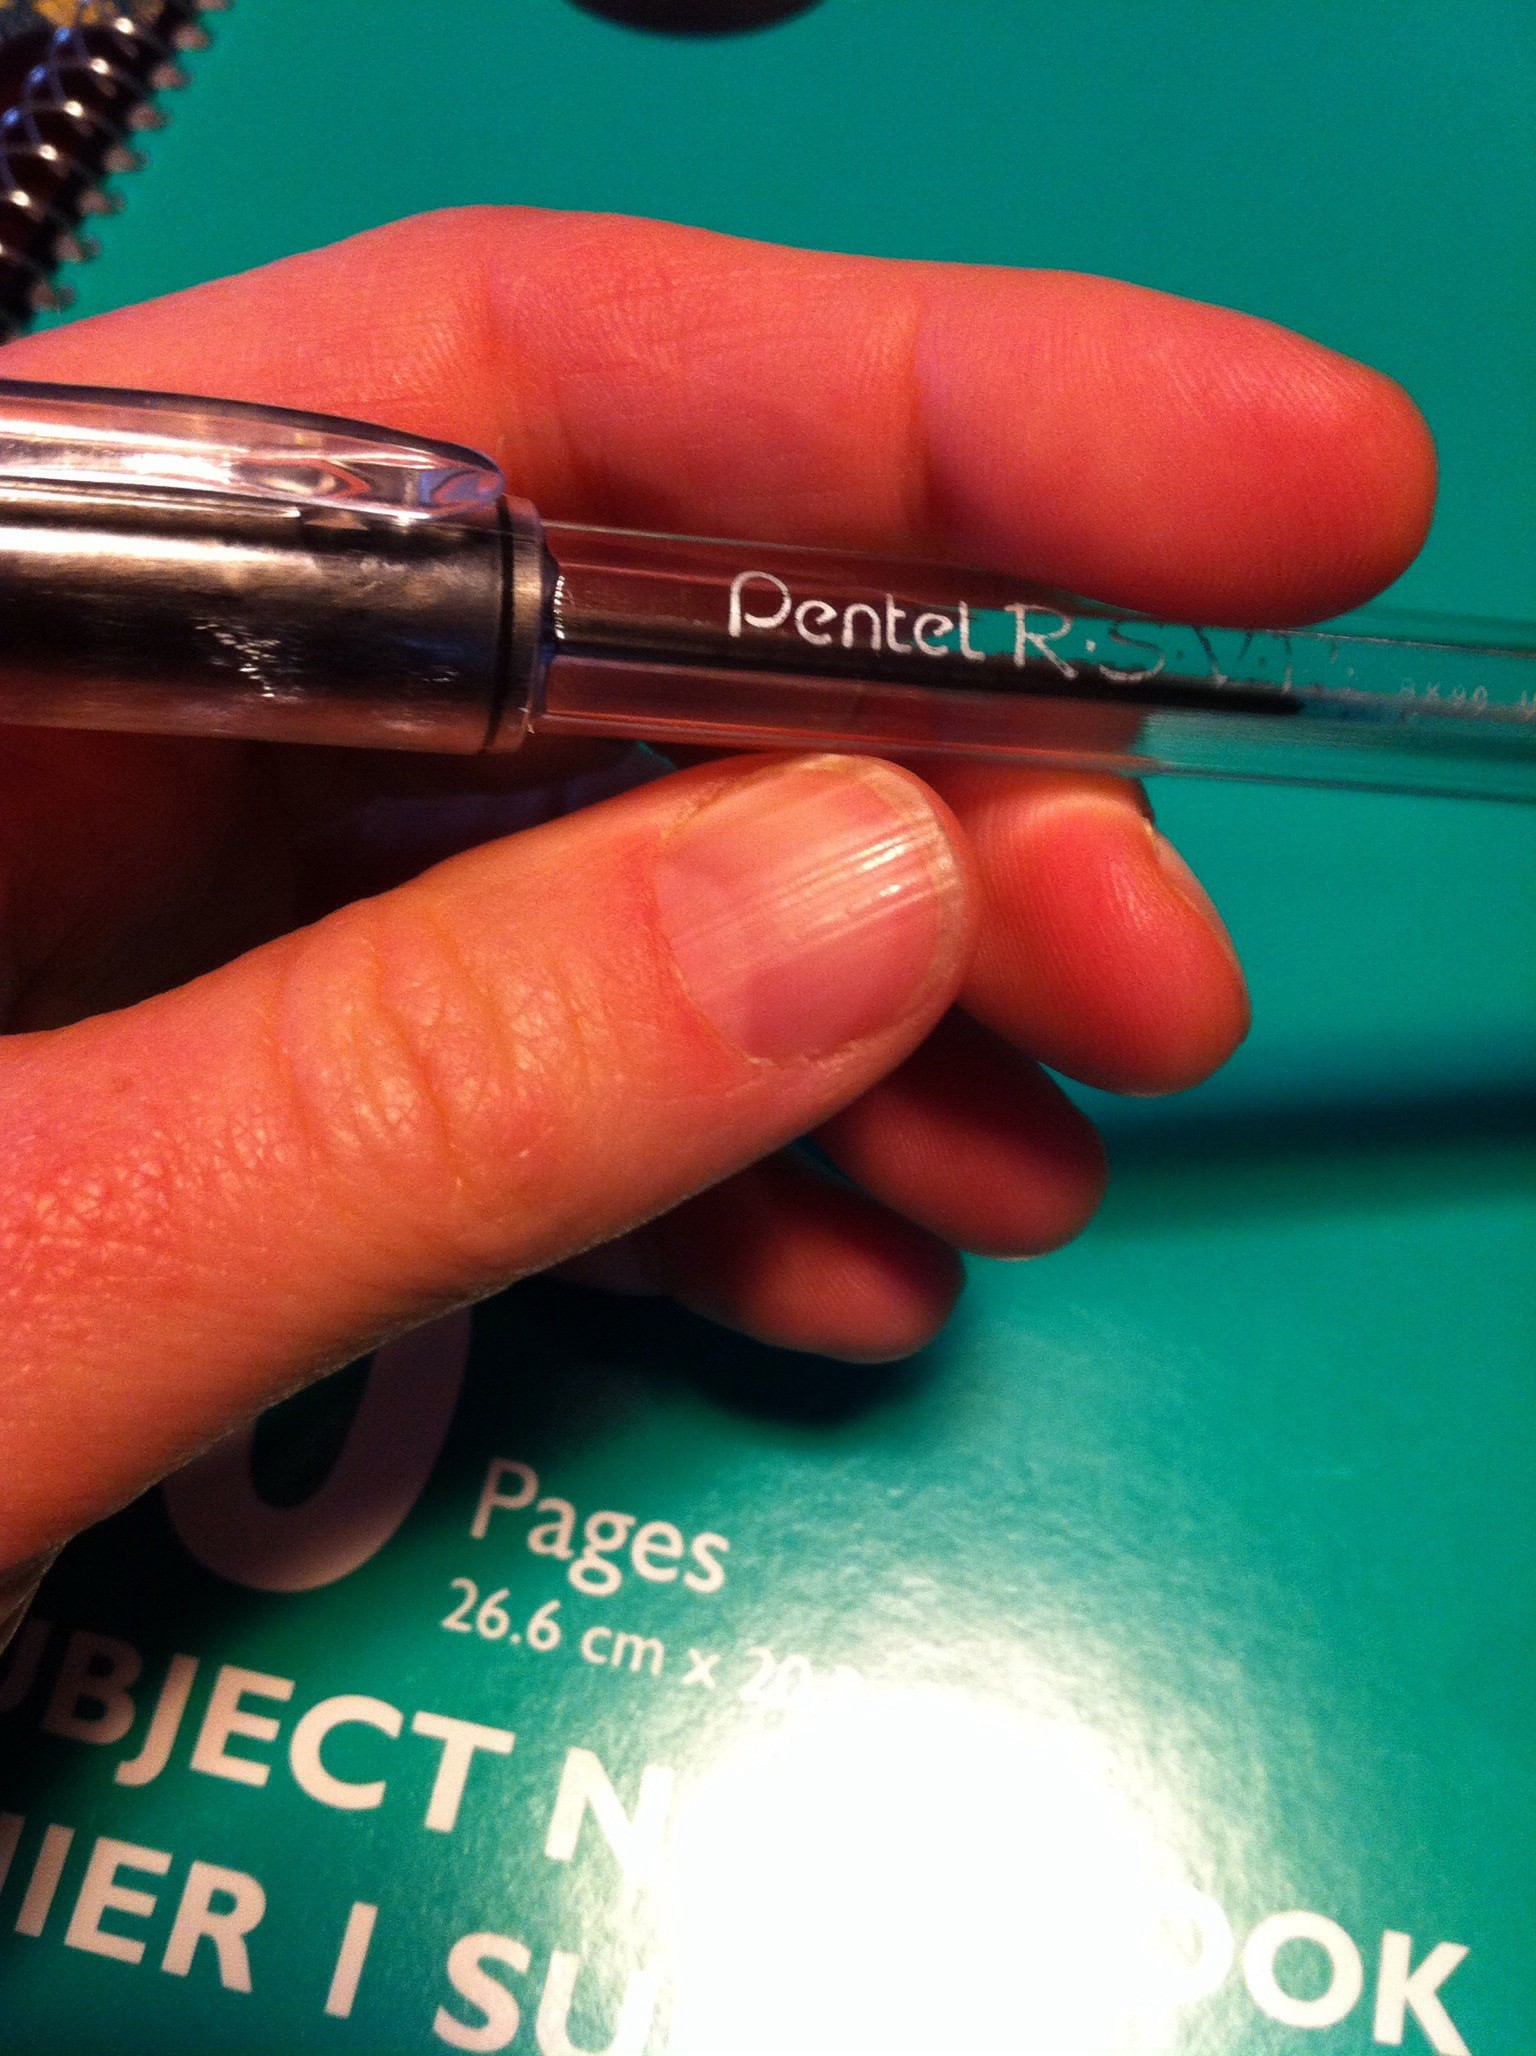 Preferred pen.